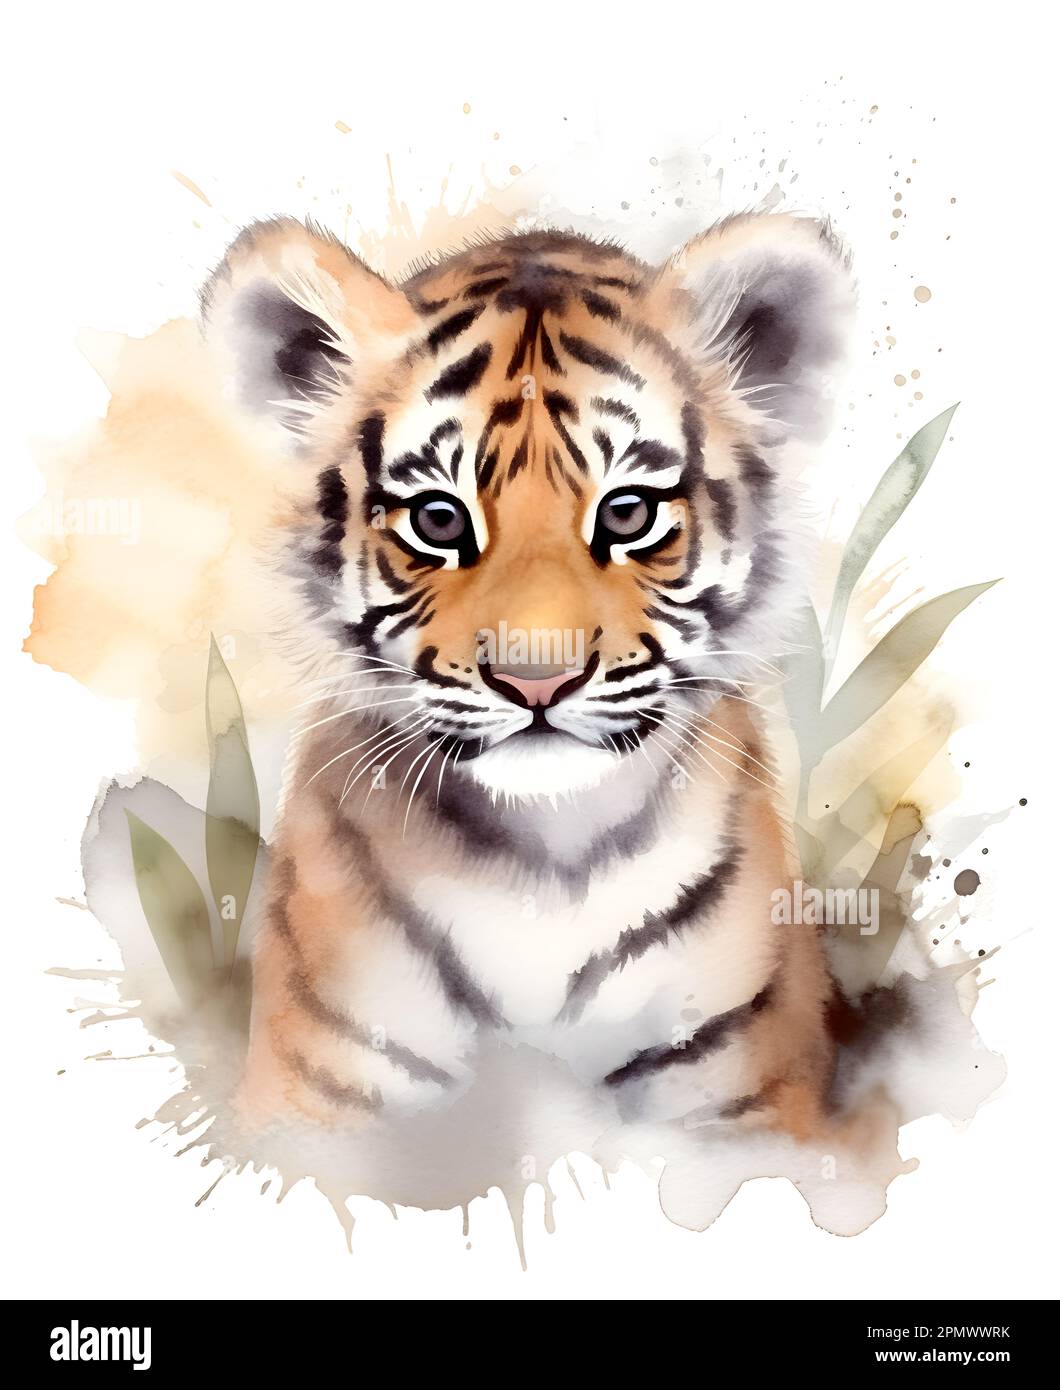 Süßes Baby-Tiger-Aquarell-Bild. Poster für Kinder mit lustigen und glücklichen Tieren. Stockfoto